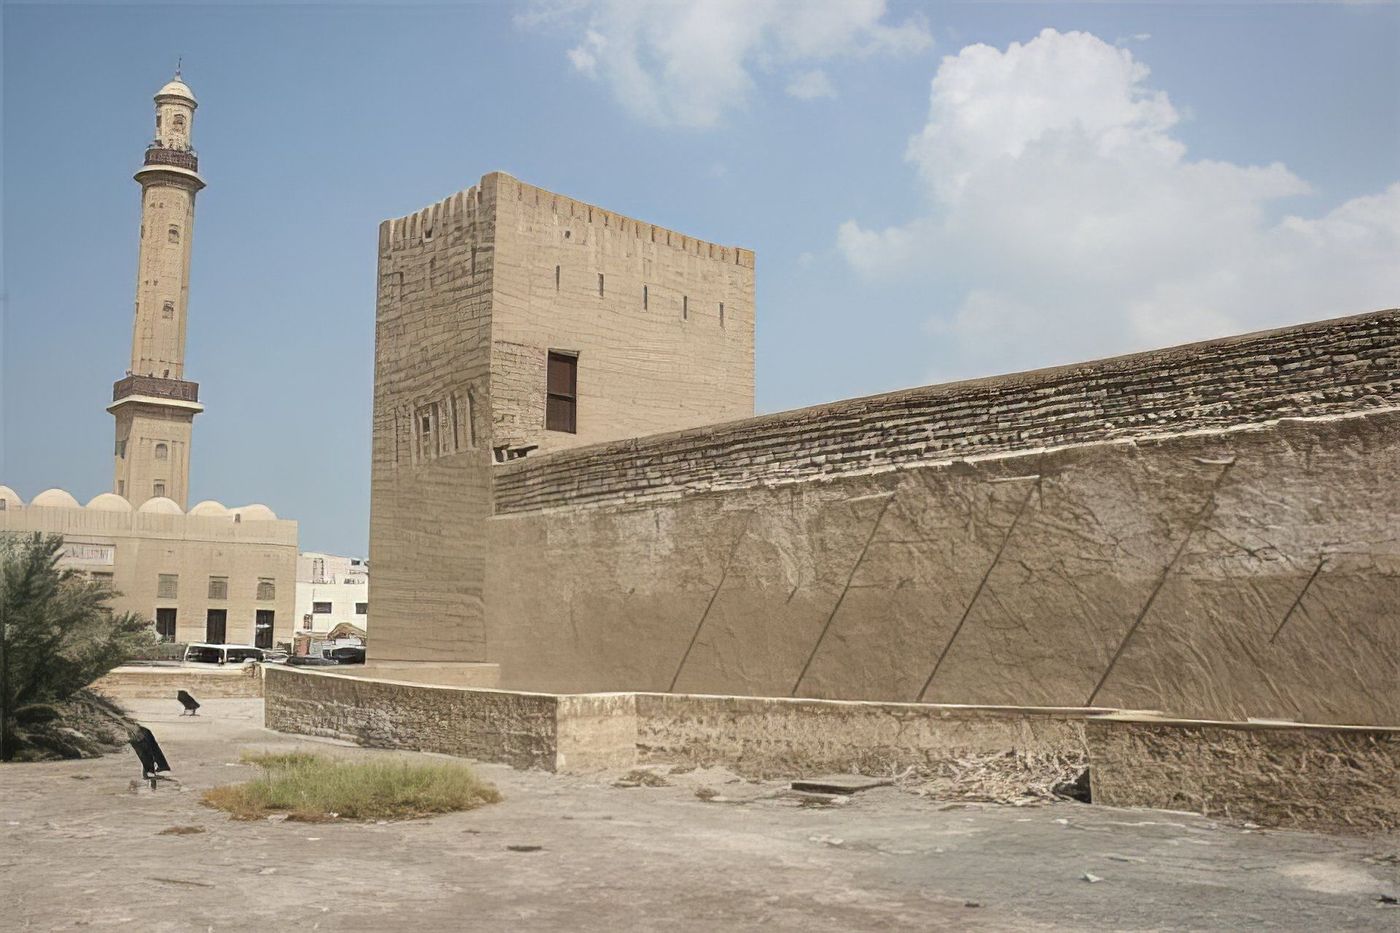 Dubaï Museum (Al Fahidi Fort)